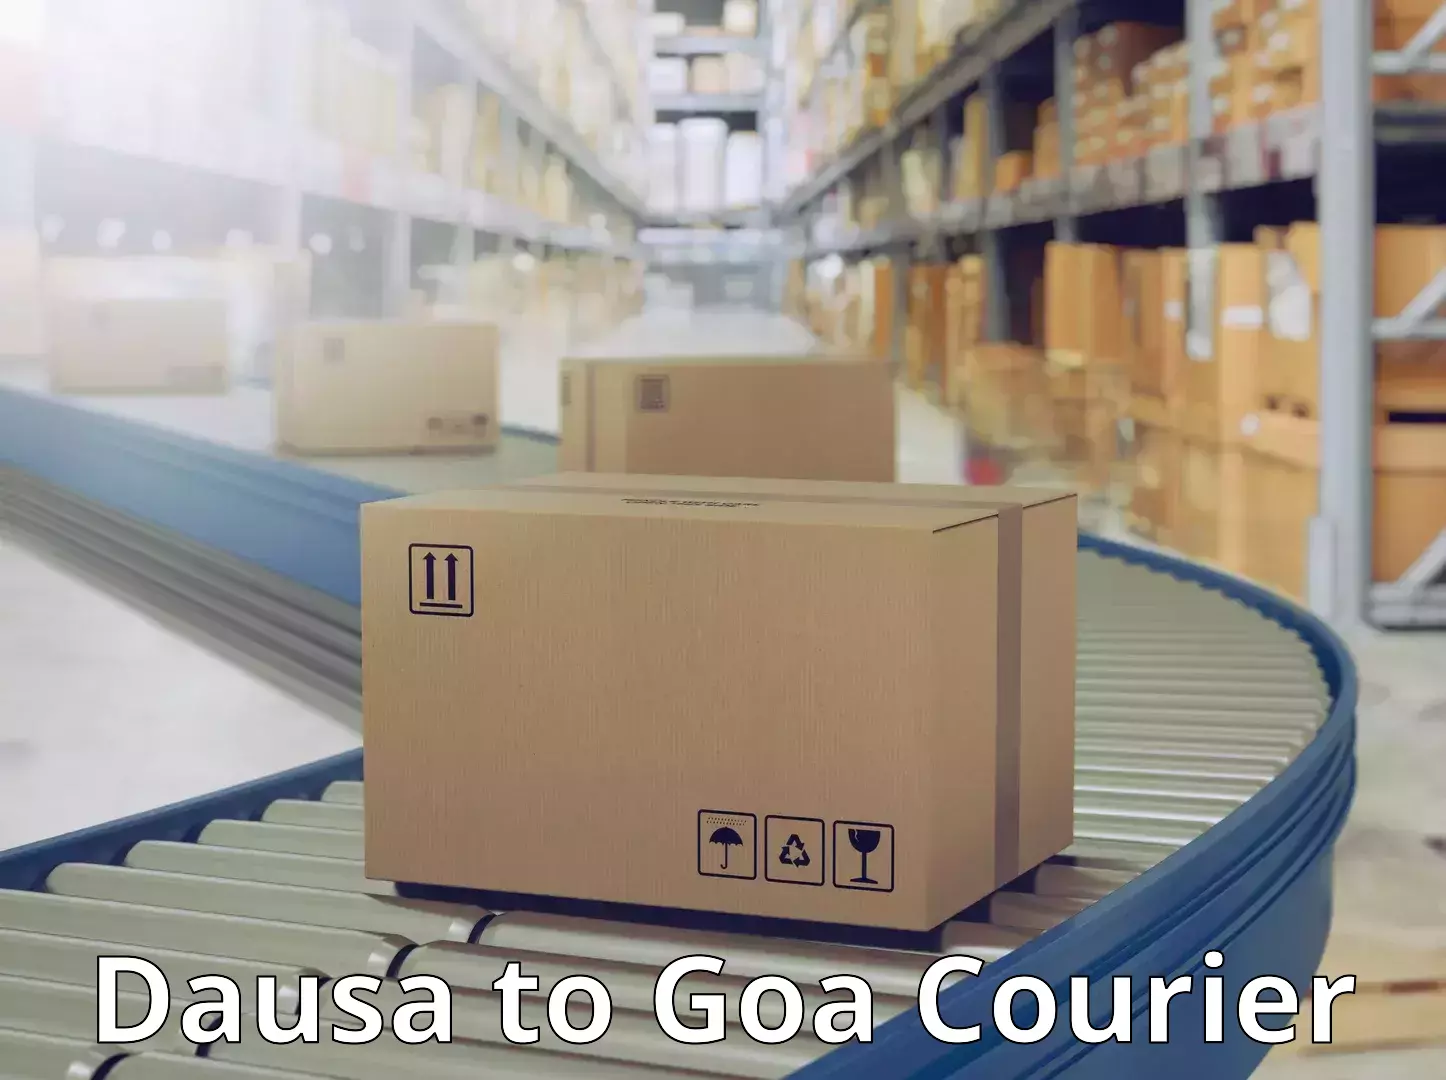 Logistics service provider Dausa to South Goa